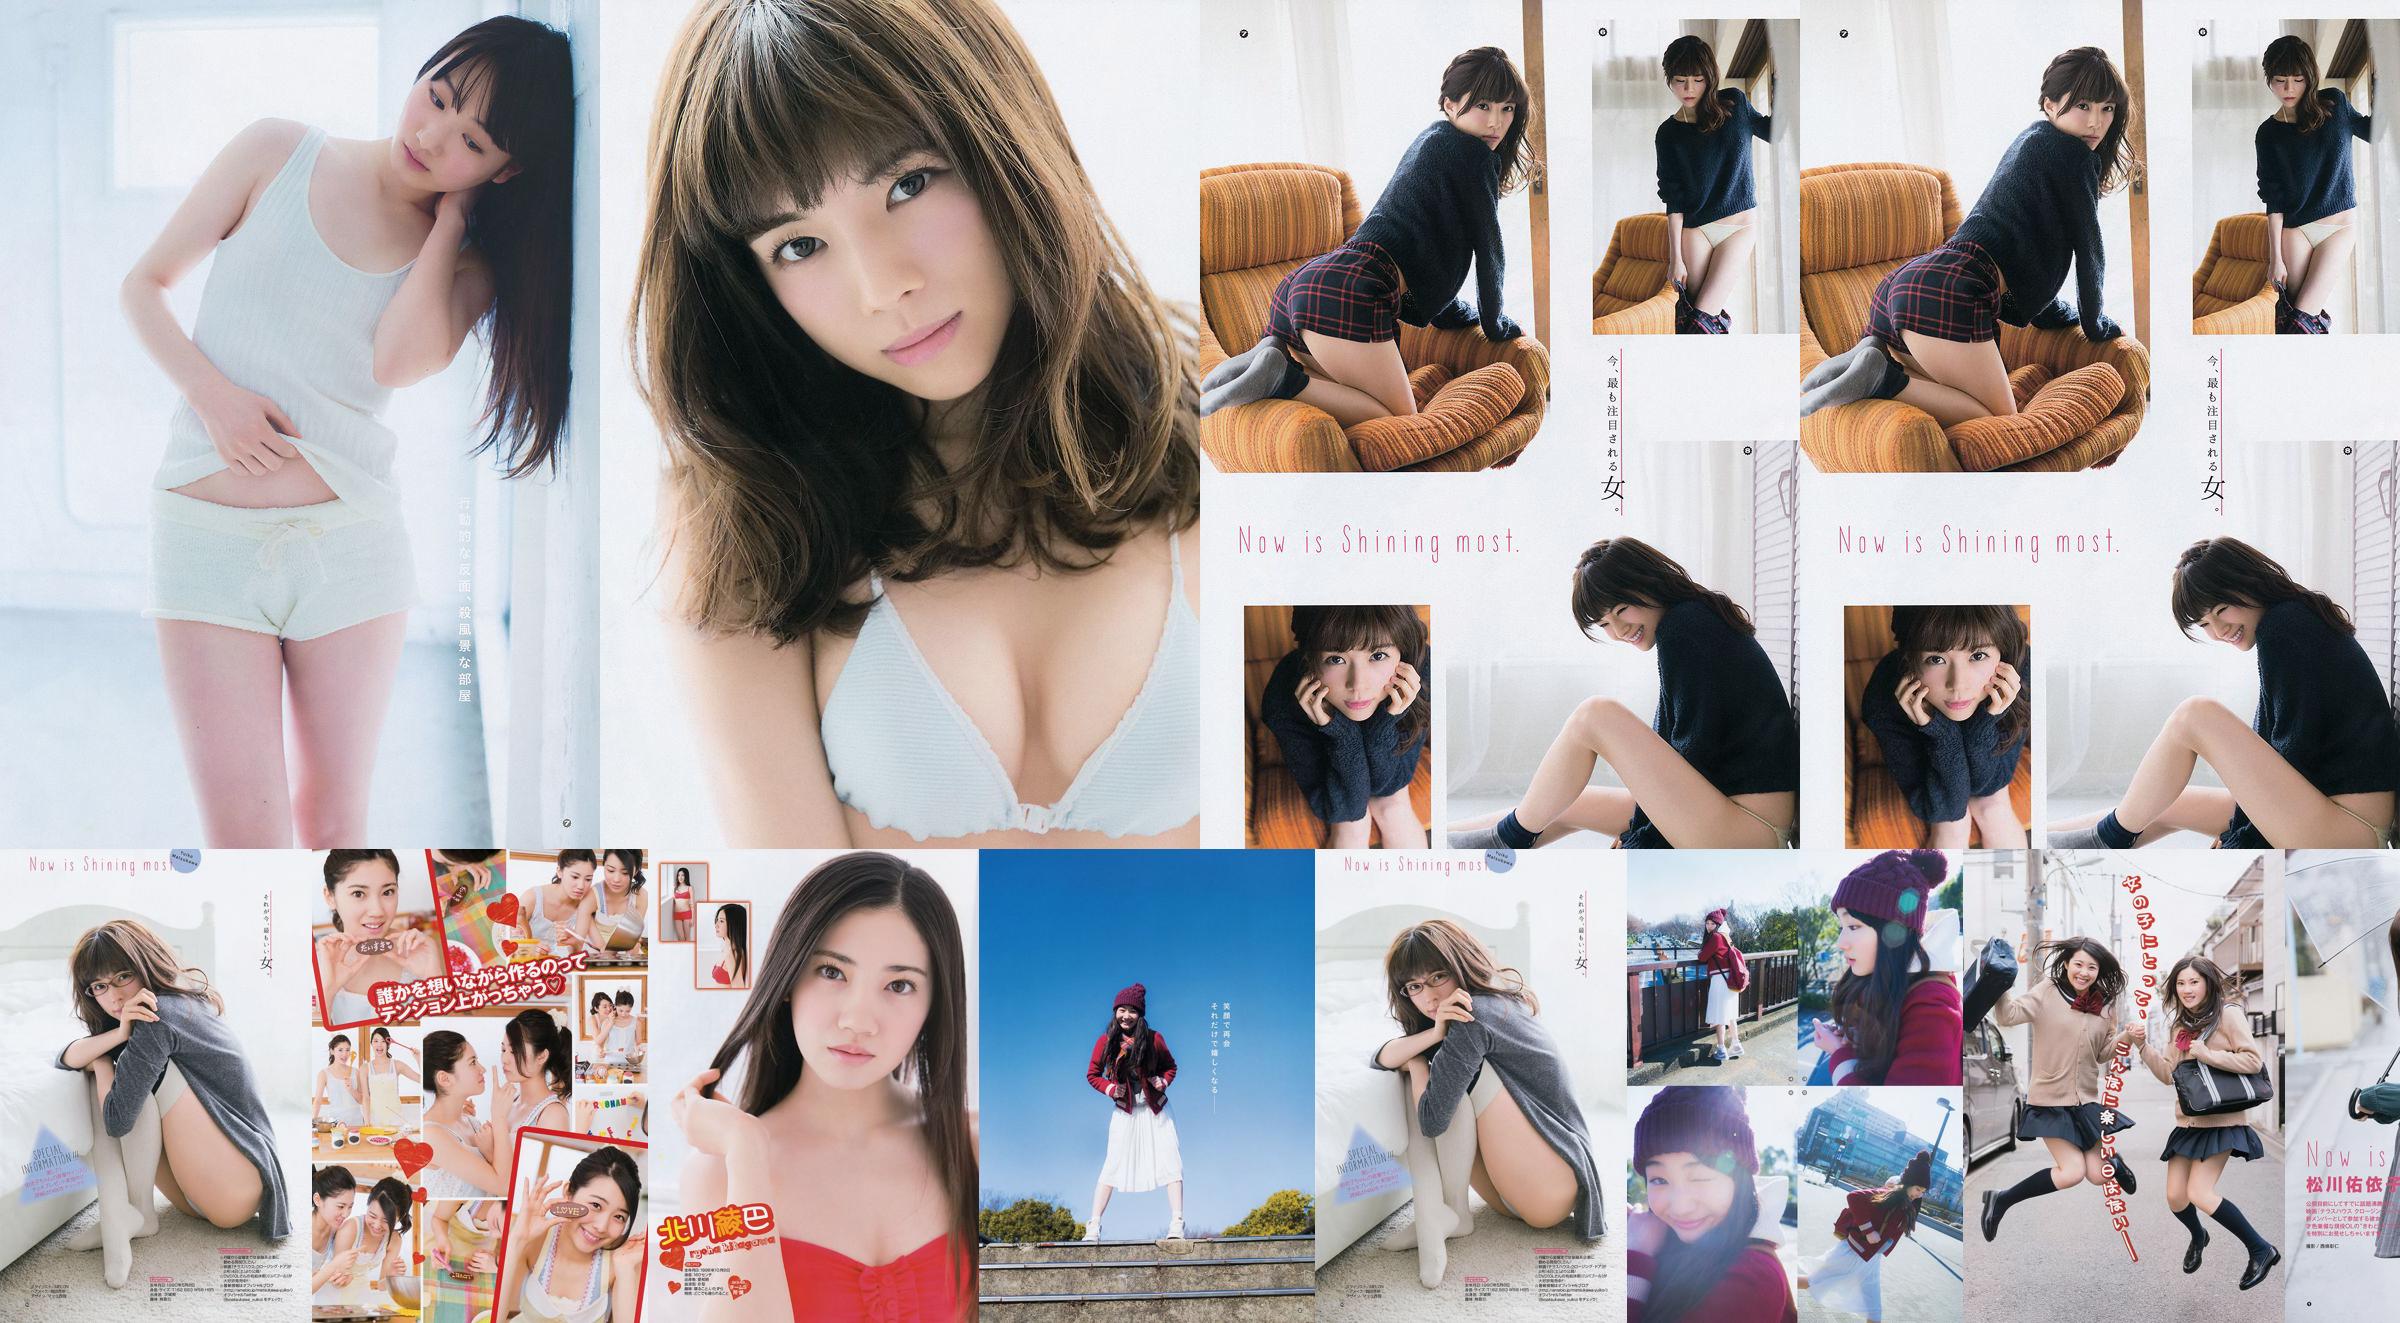 [Młody Gangan] Ryoha Kitagawa Ami Miyamae Yuiko Matsukawa Narumi Akizuki 2015 nr 04 Zdjęcie No.cee264 Strona 4